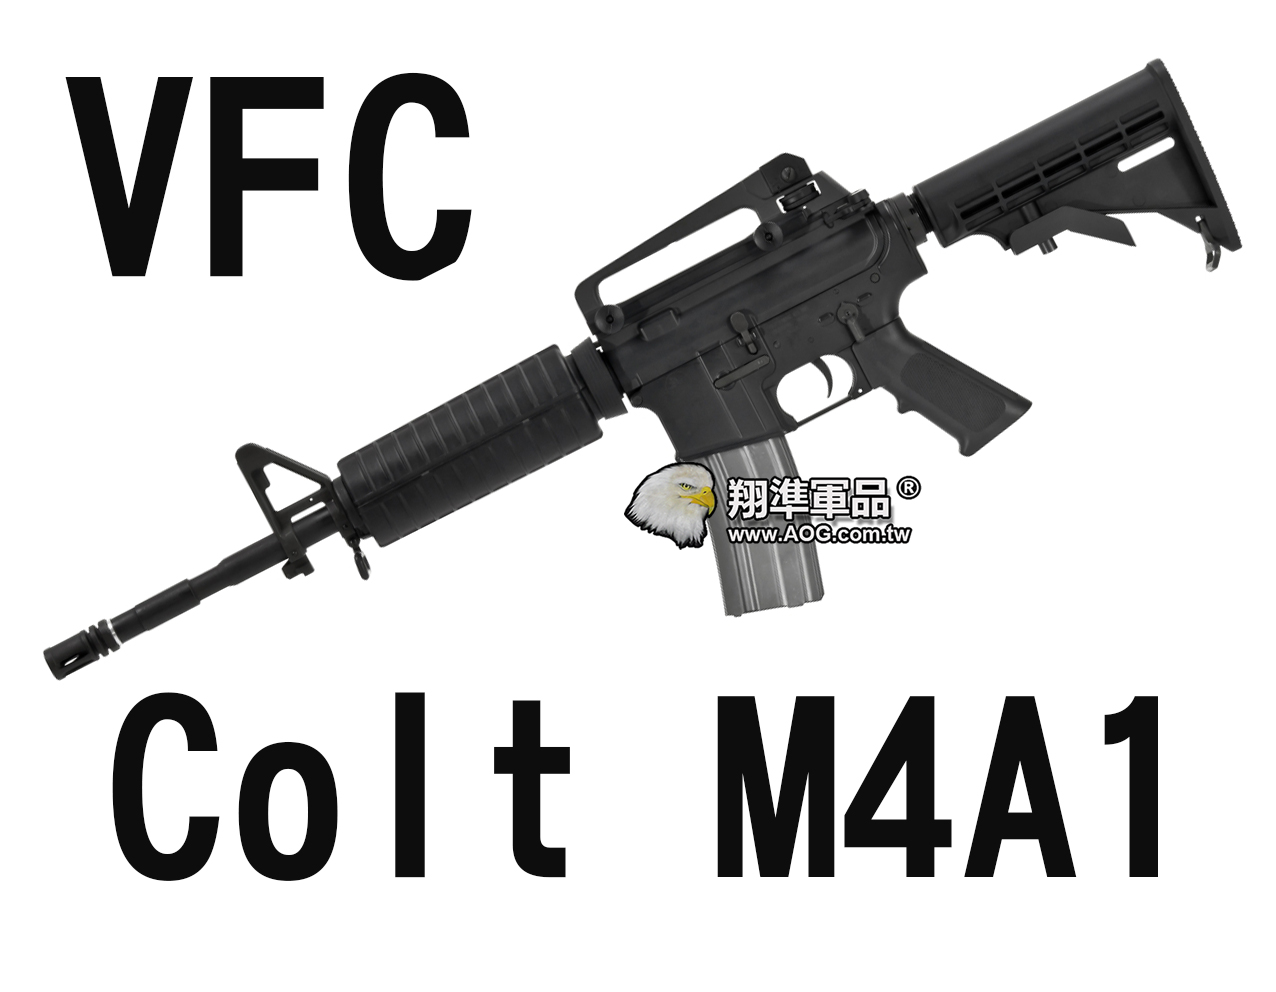 【翔準軍品AOG】【VFC】Colt M4A1 (STD)伸縮托  電動槍 長槍 衝鋒槍 黑色 VF1-LM4STD-BK01 